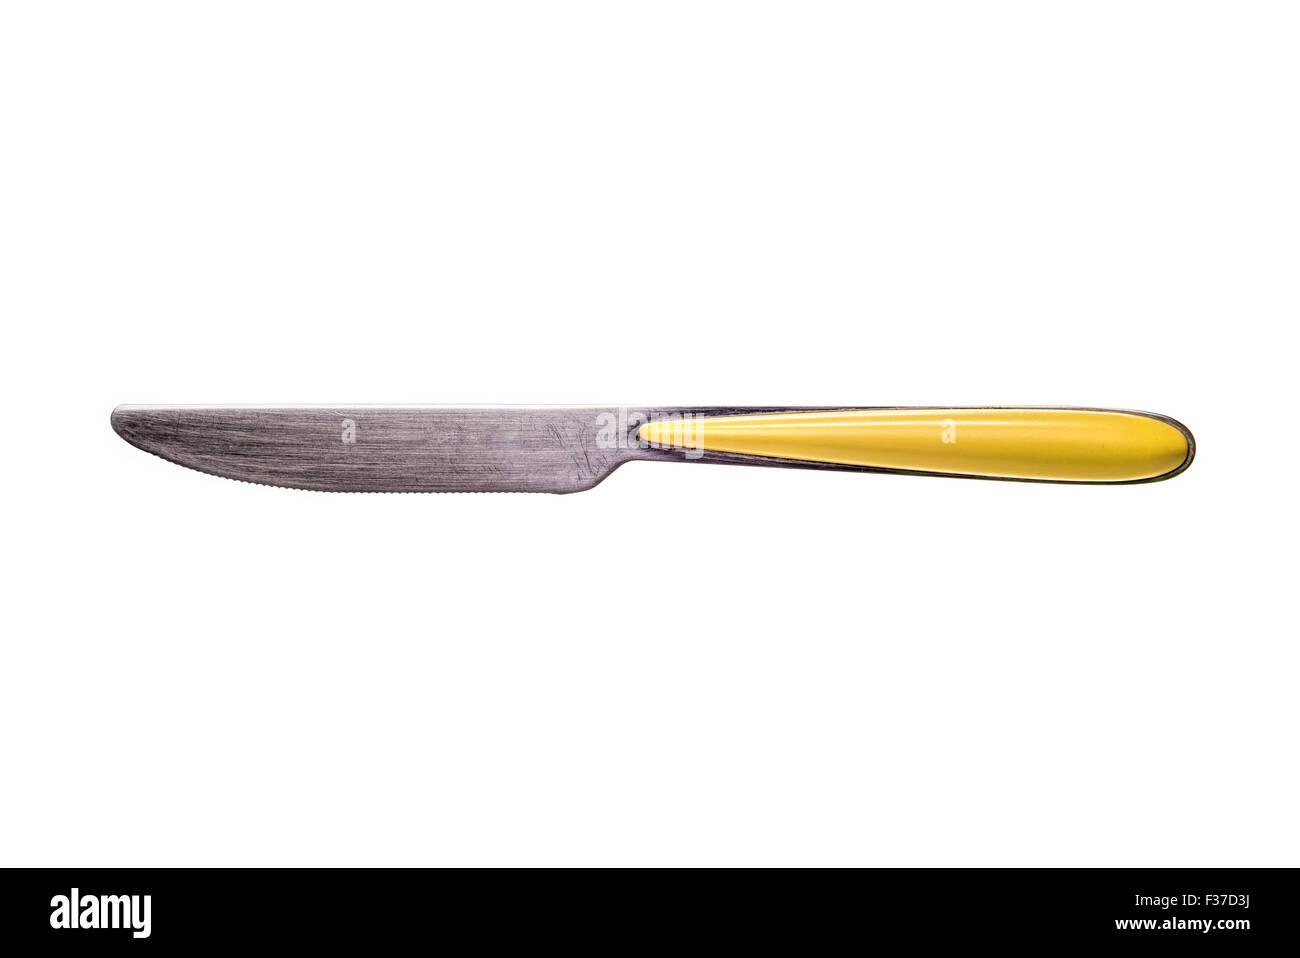 Un materiale metallico in acciaio inossidabile inox coltello da tavola con un manico giallo isolato su sfondo bianco Foto Stock